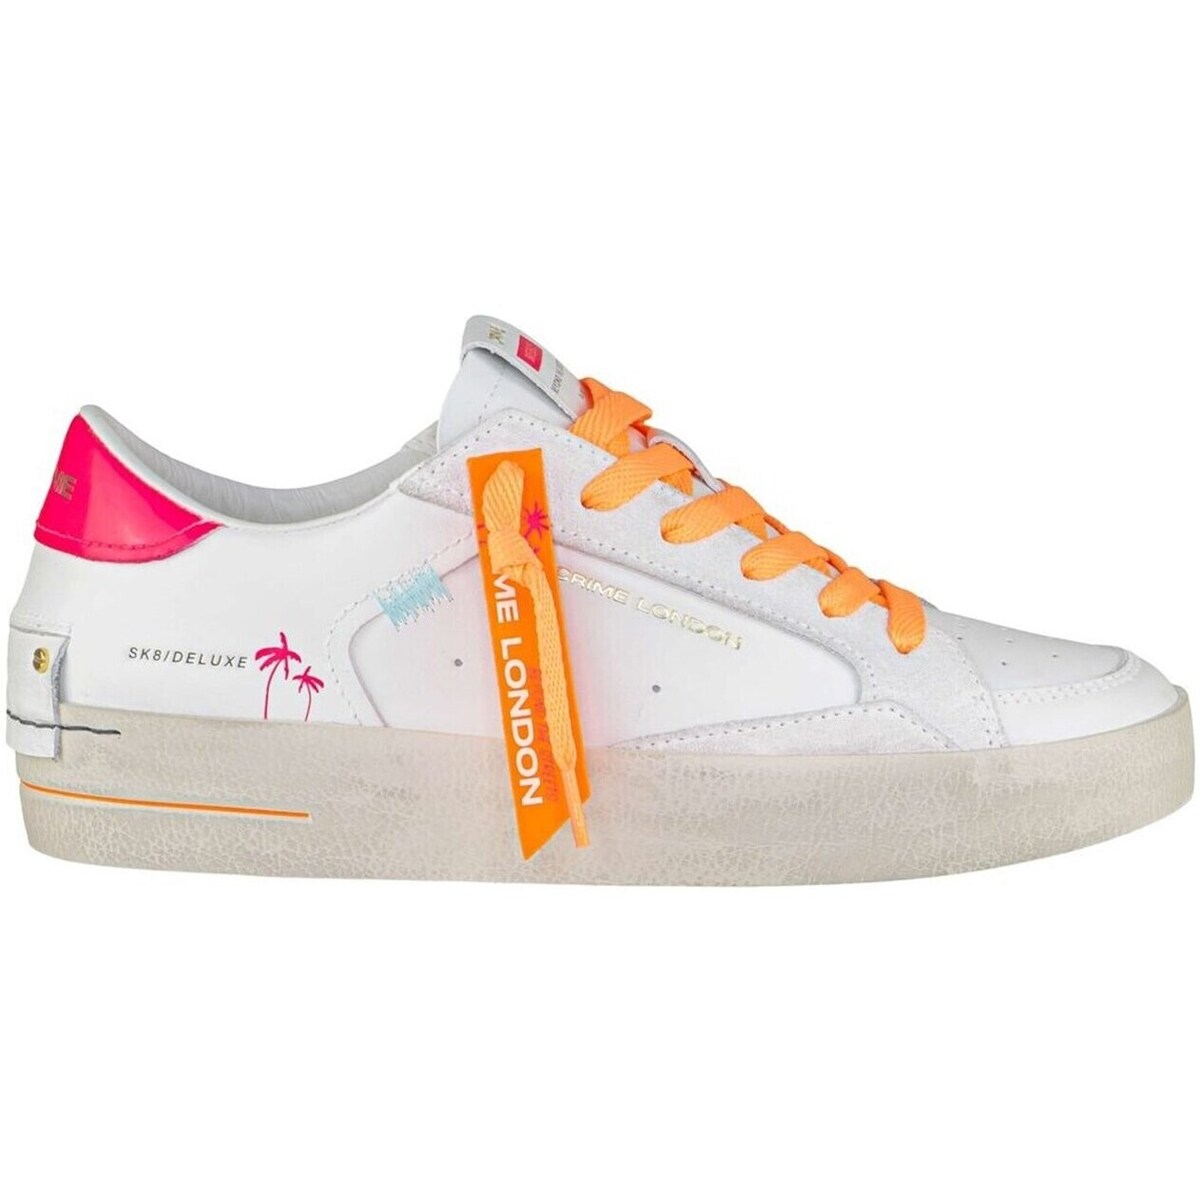 Scarpe Donna Sneakers basse Crime London SK8 DELUXE D Sneakers Donna bianco/arancio Multicolore